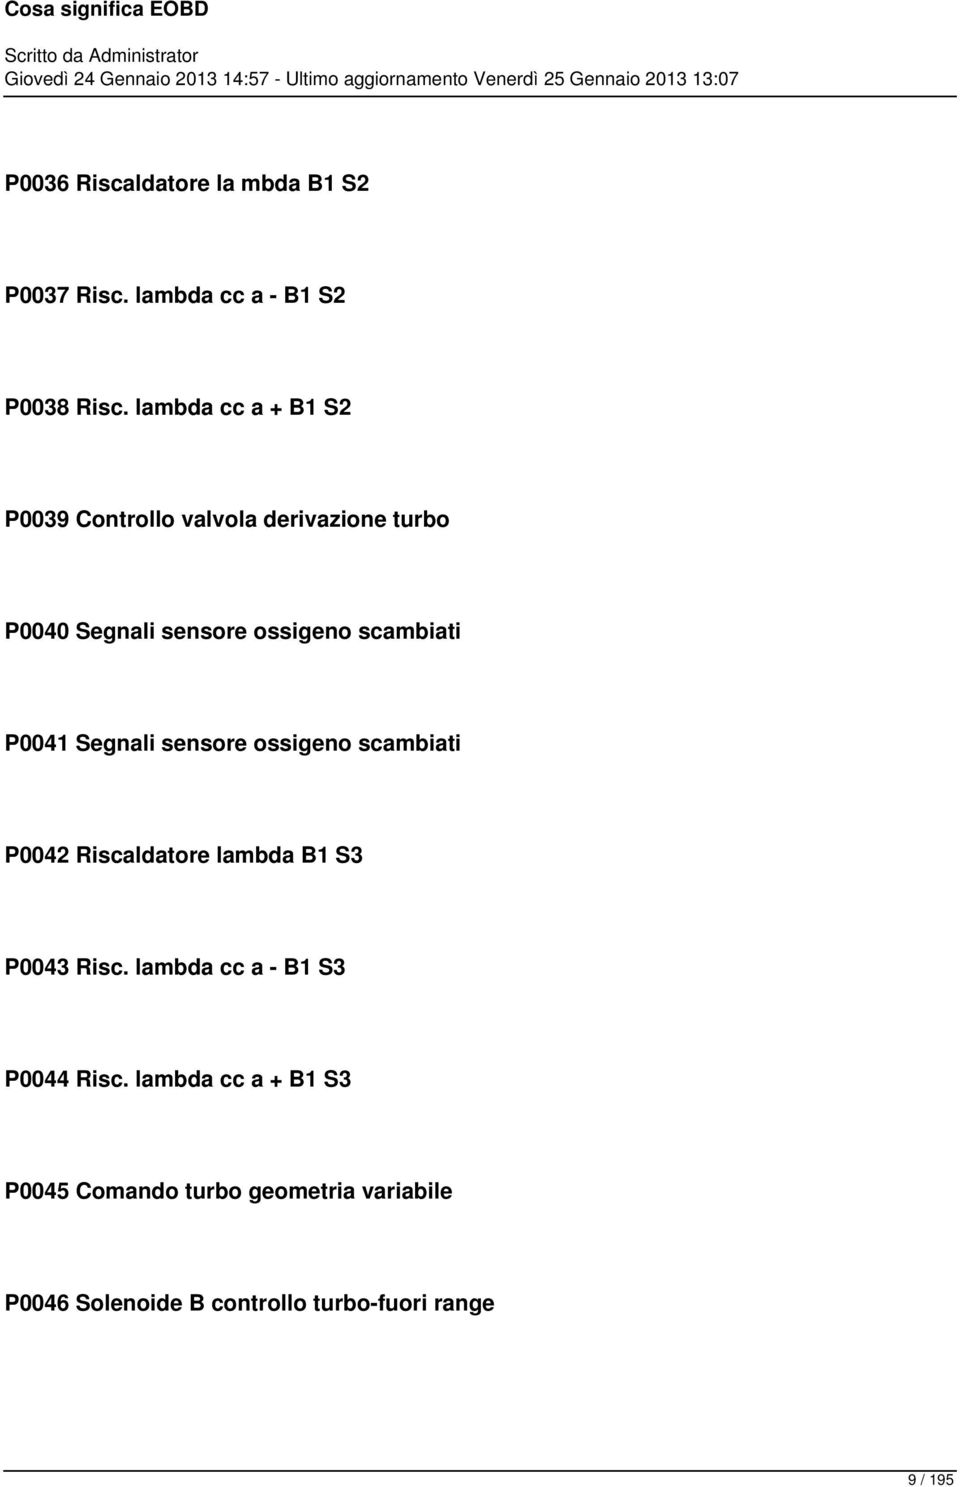 P0041 Segnali sensore ossigeno scambiati P0042 Riscaldatore lambda B1 S3 P0043 Risc.